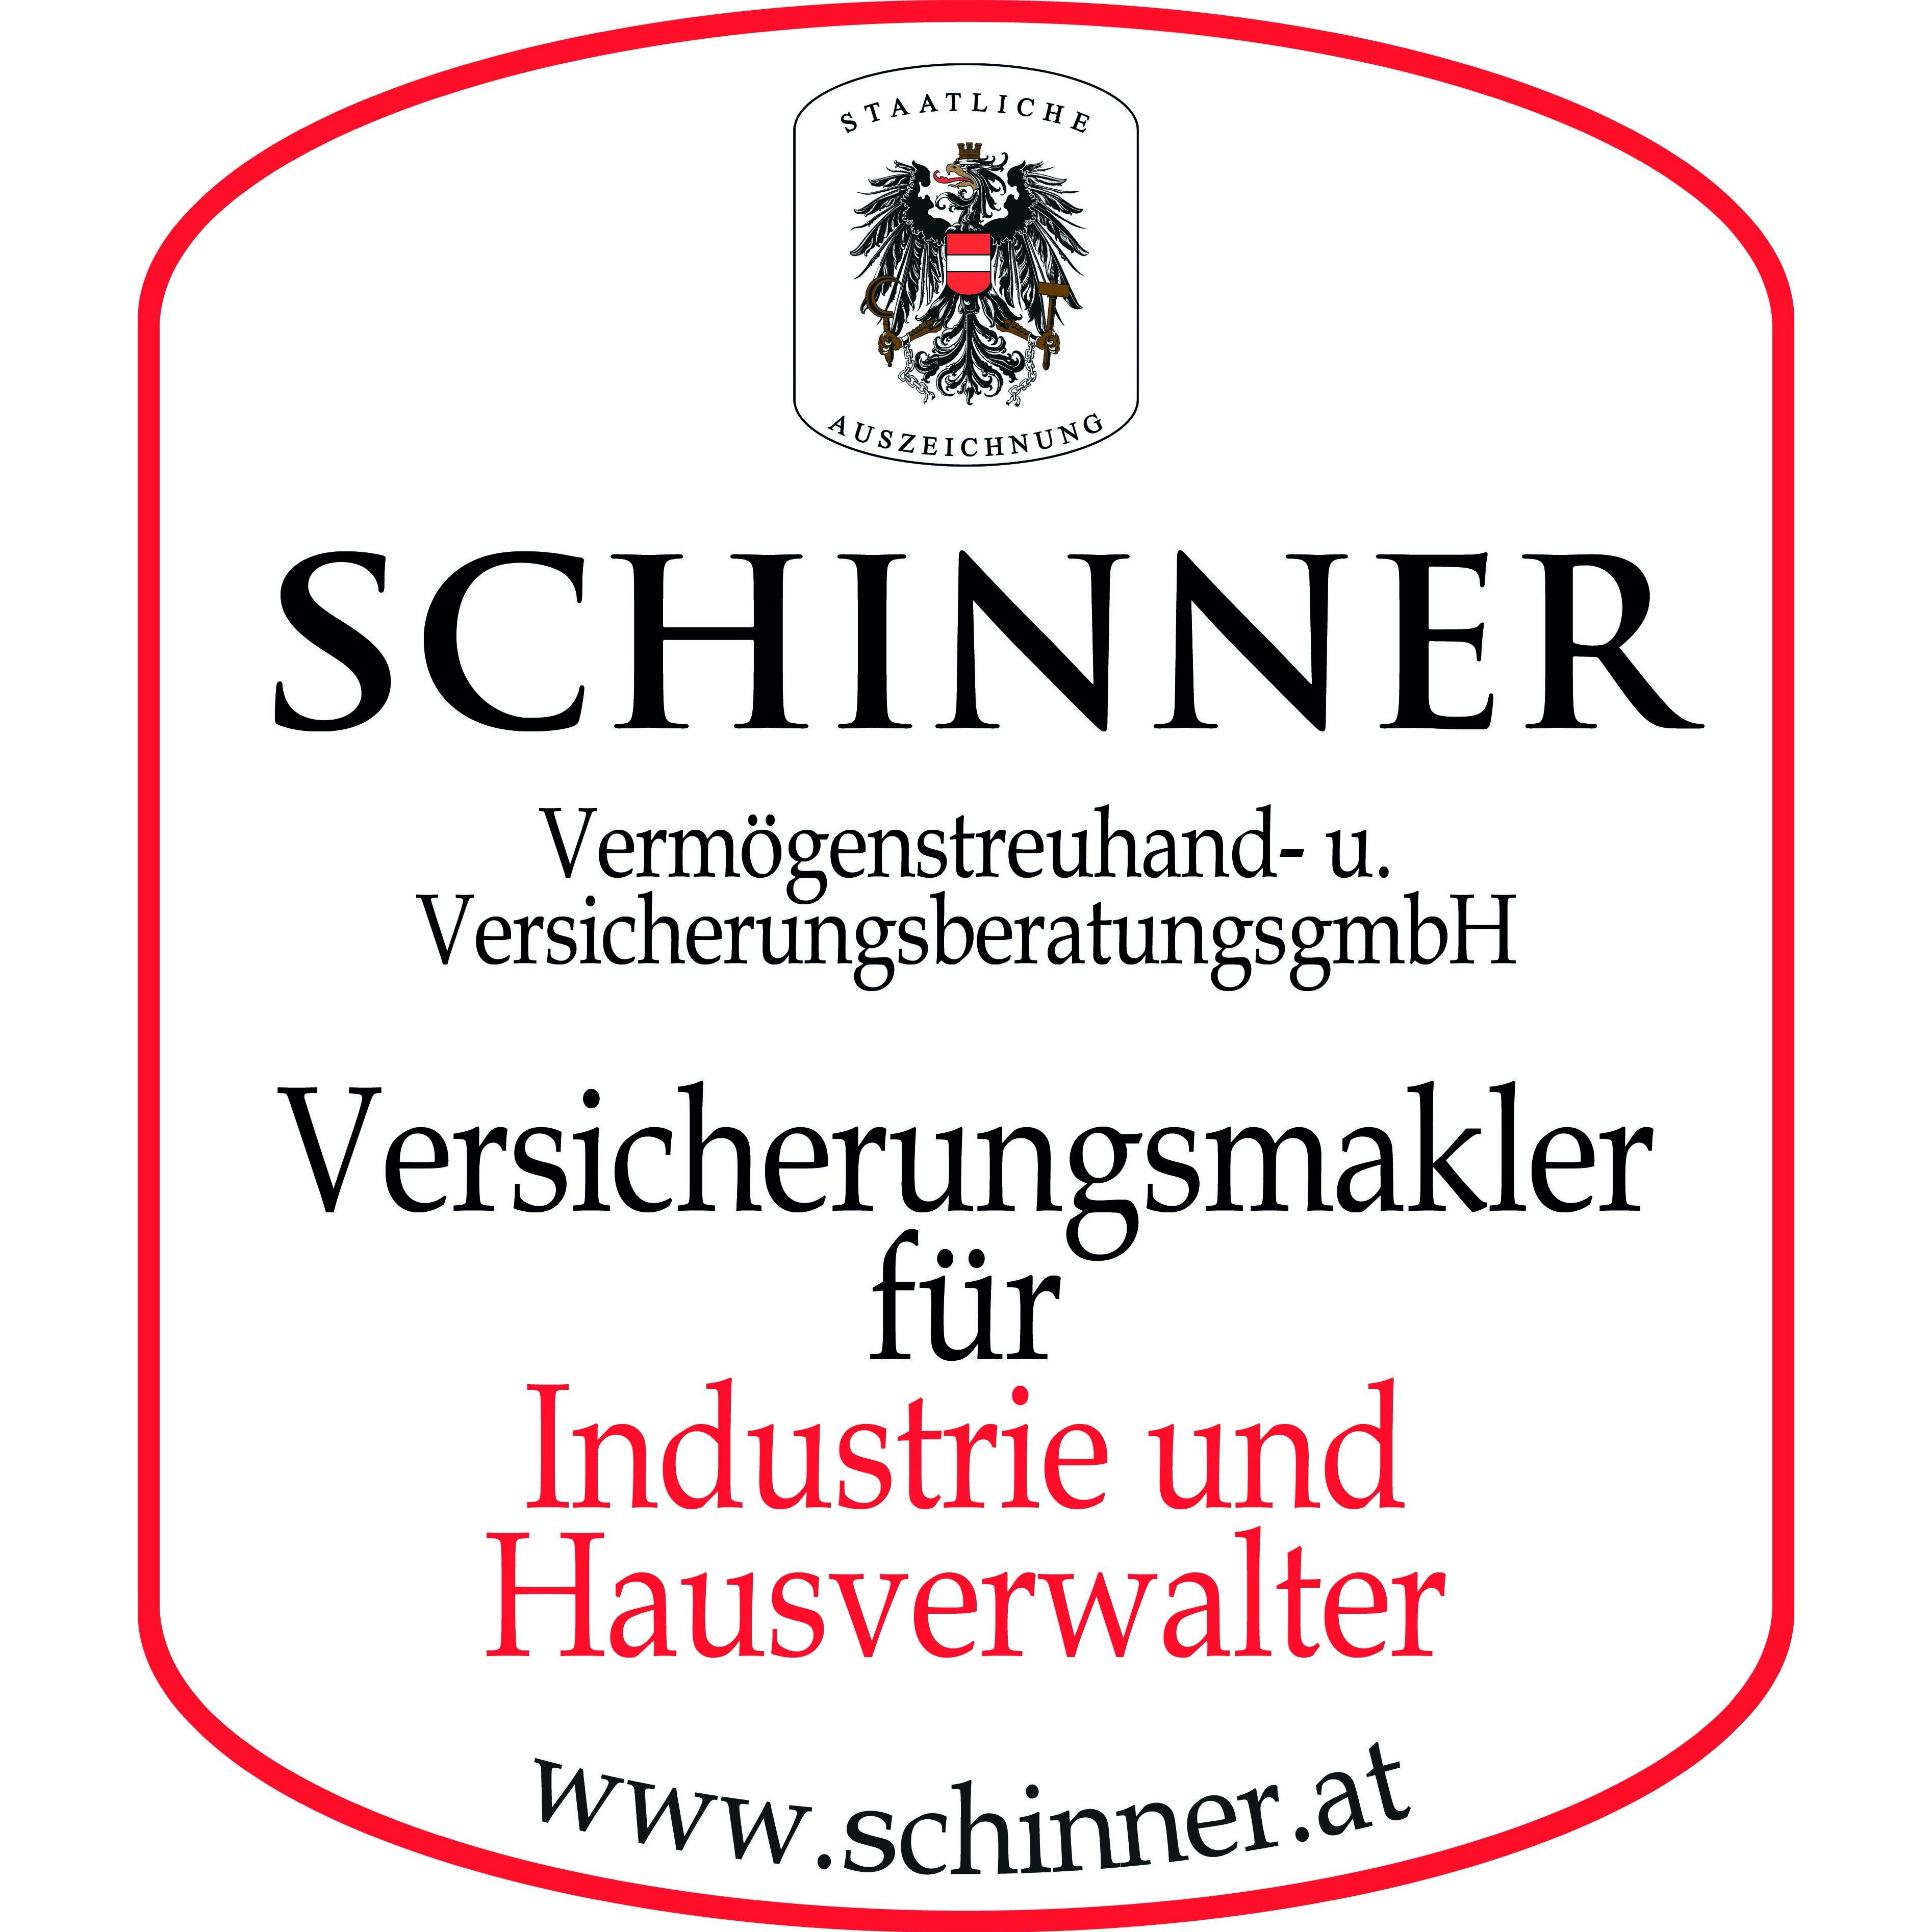 SCHINNER Vermögenstreuhand- und Versicherungsberatungs GmbH in 1030 Wien Logo